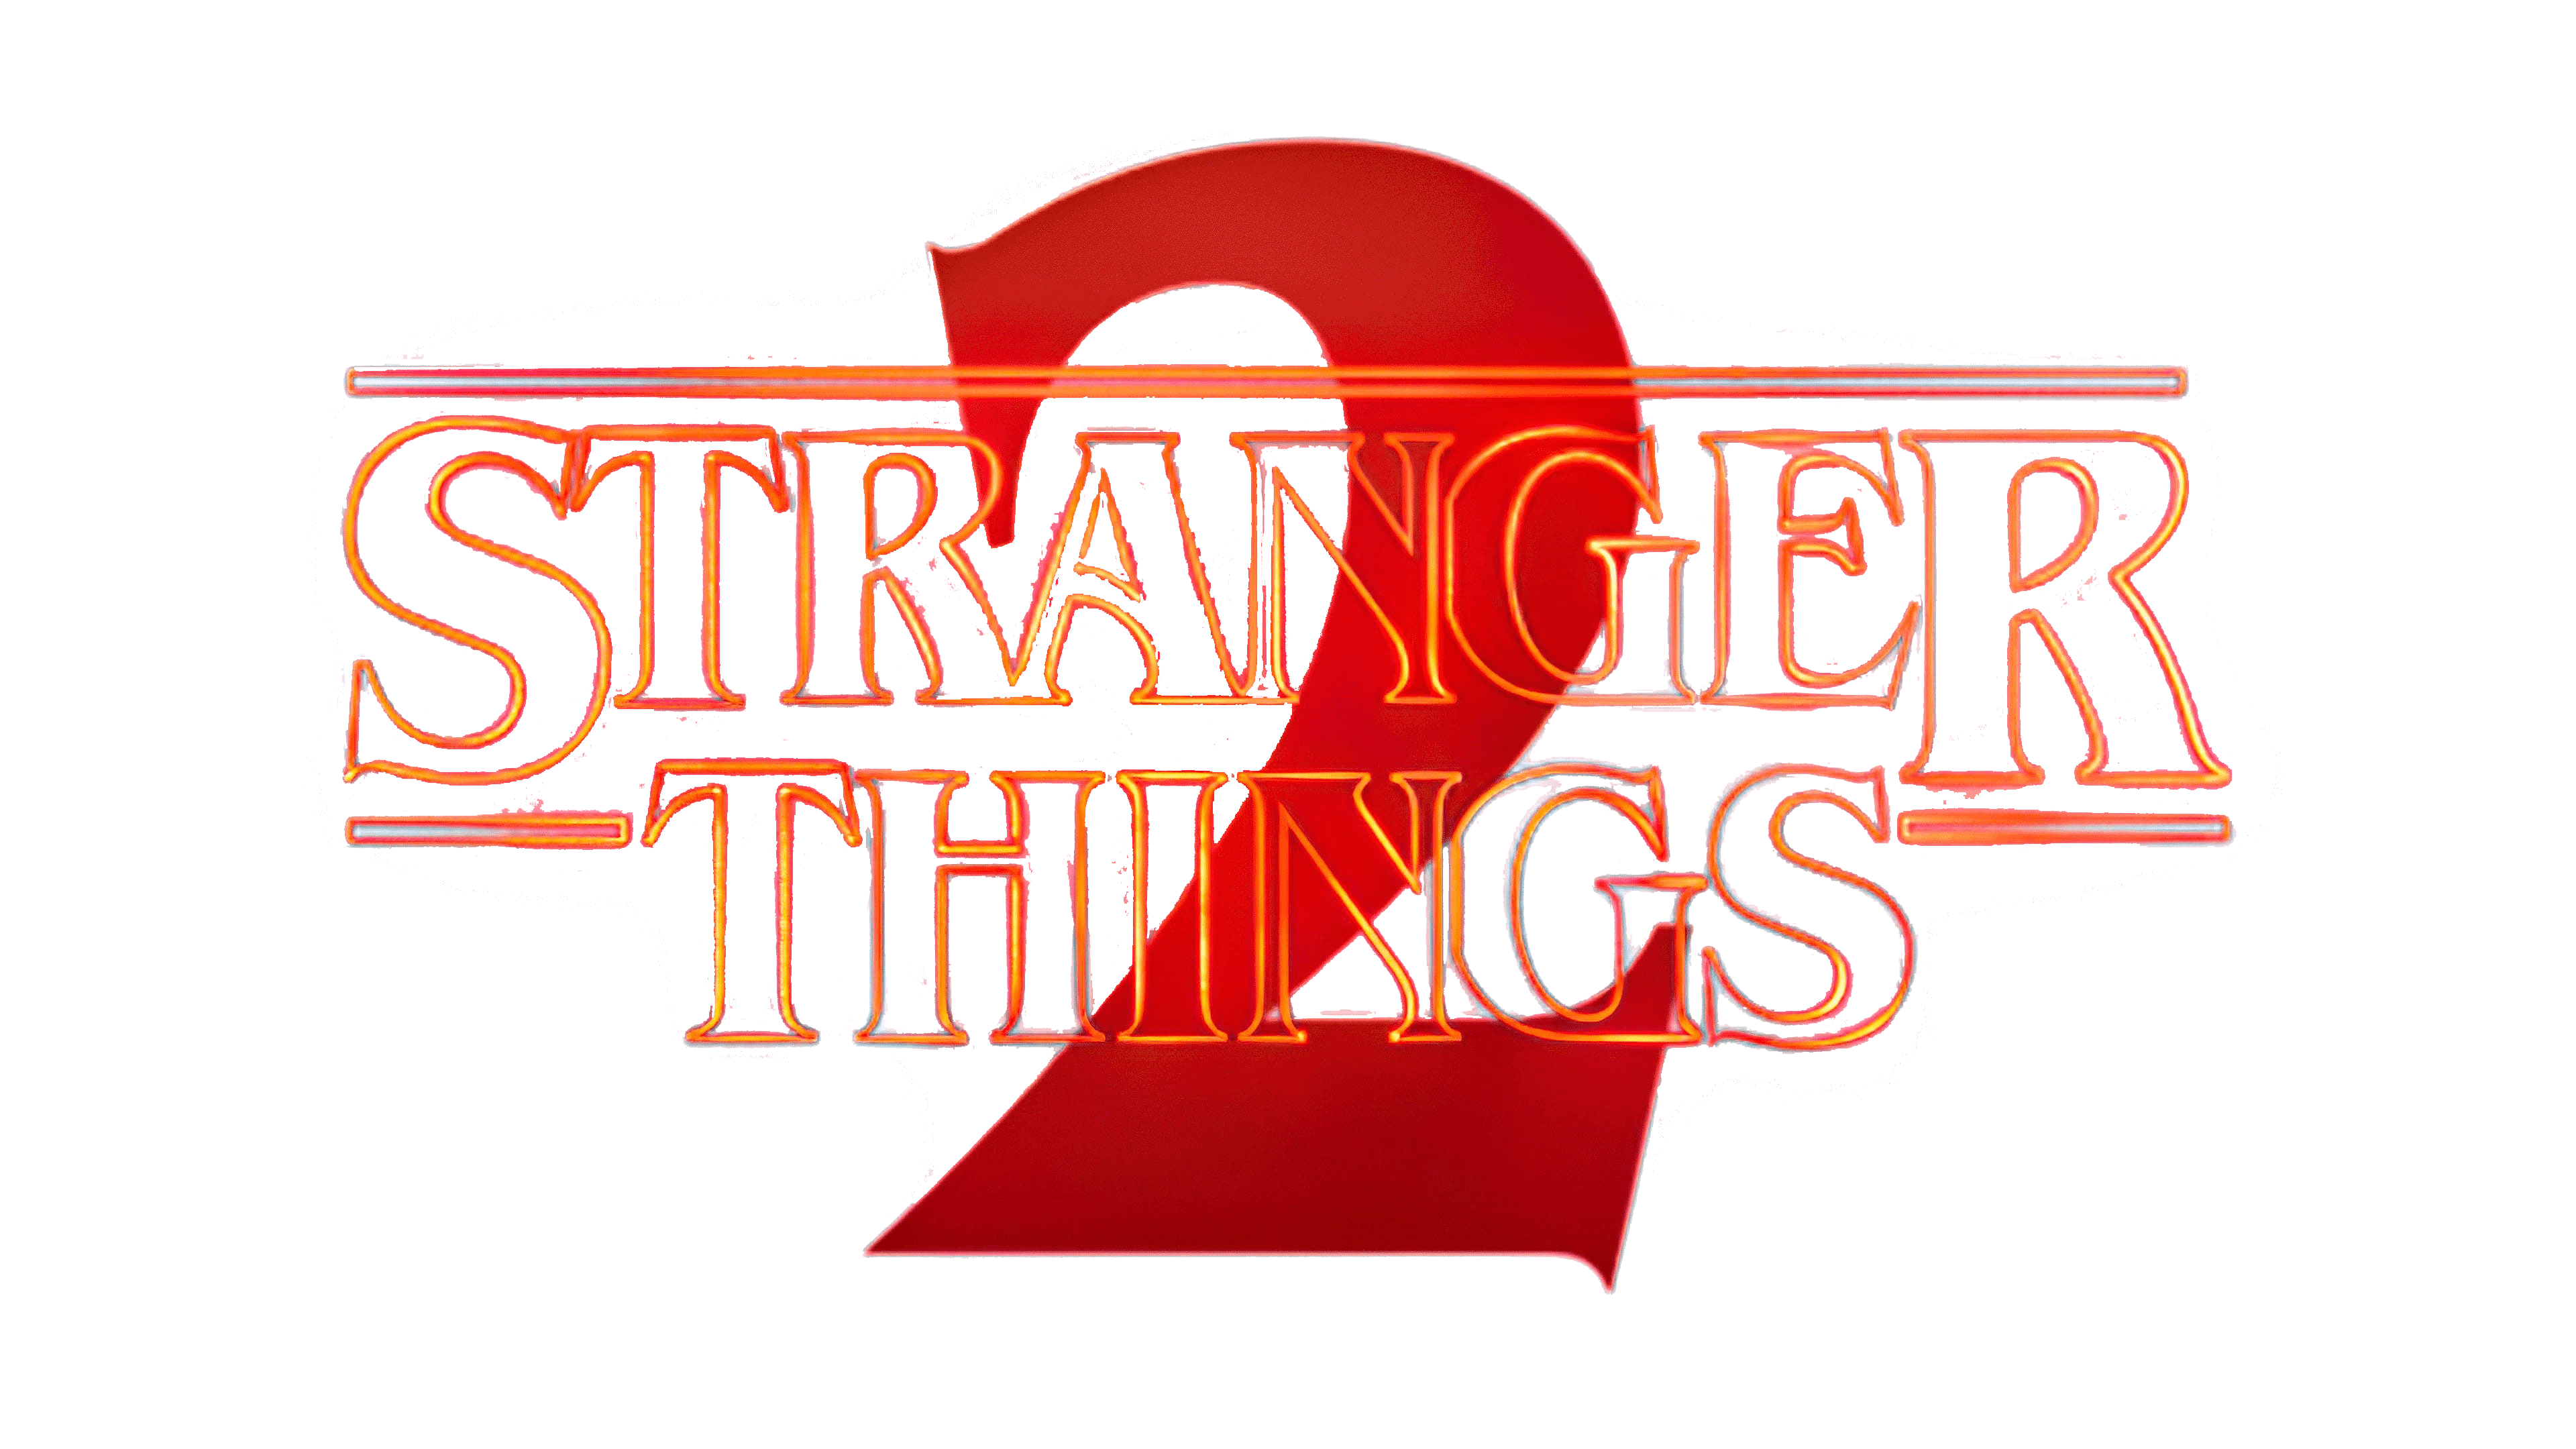 Stranger Things - Distressed Logo